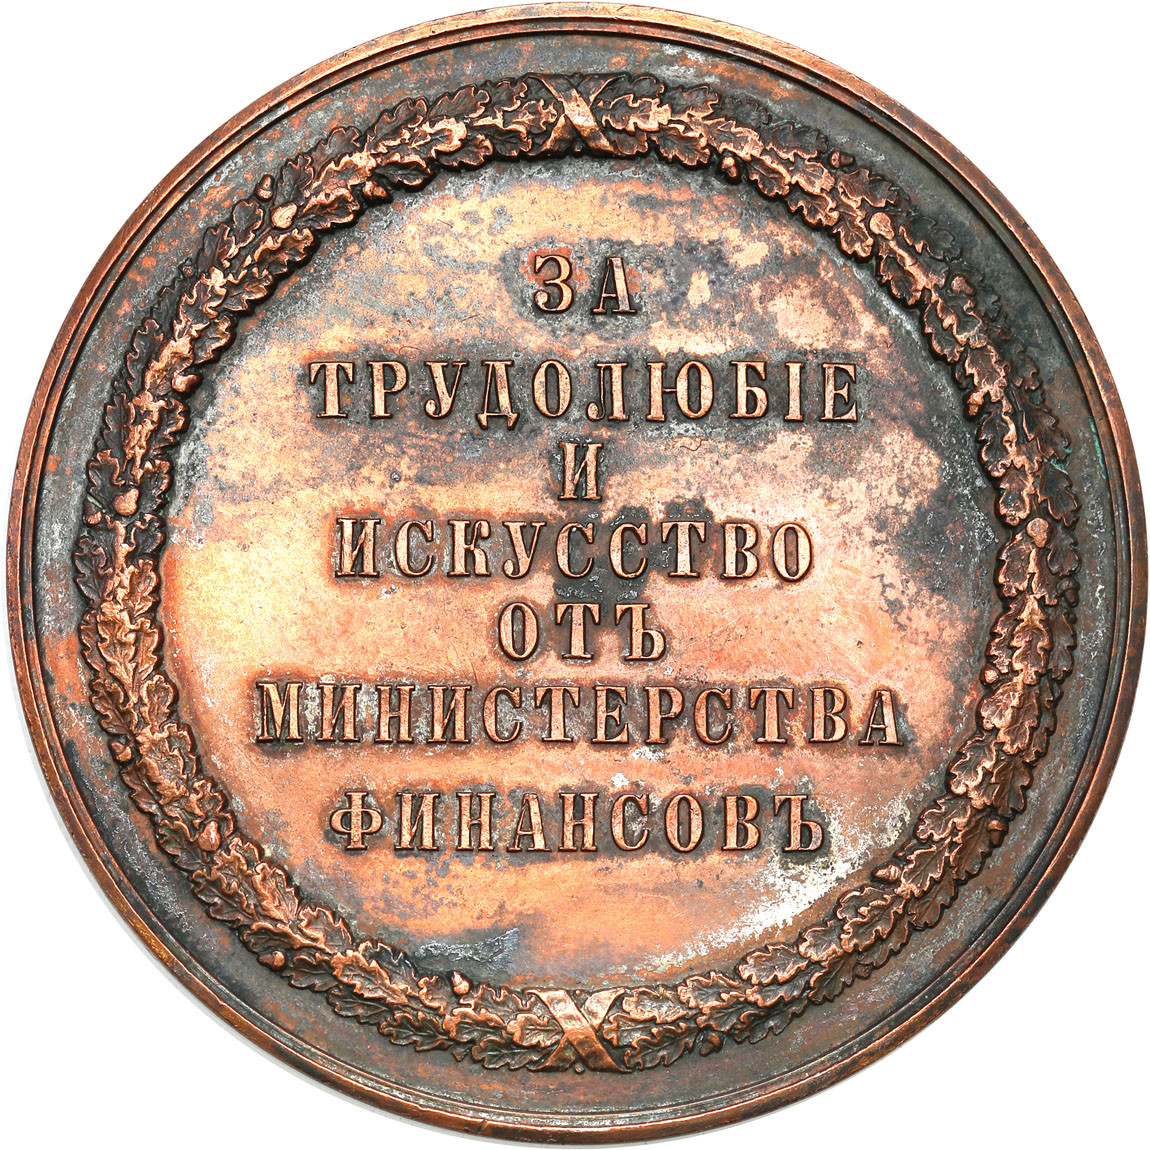 Rosja, Mikołaj II. Medal Ministerstwo Finansów za wybitne osiągnięcia w sztuce